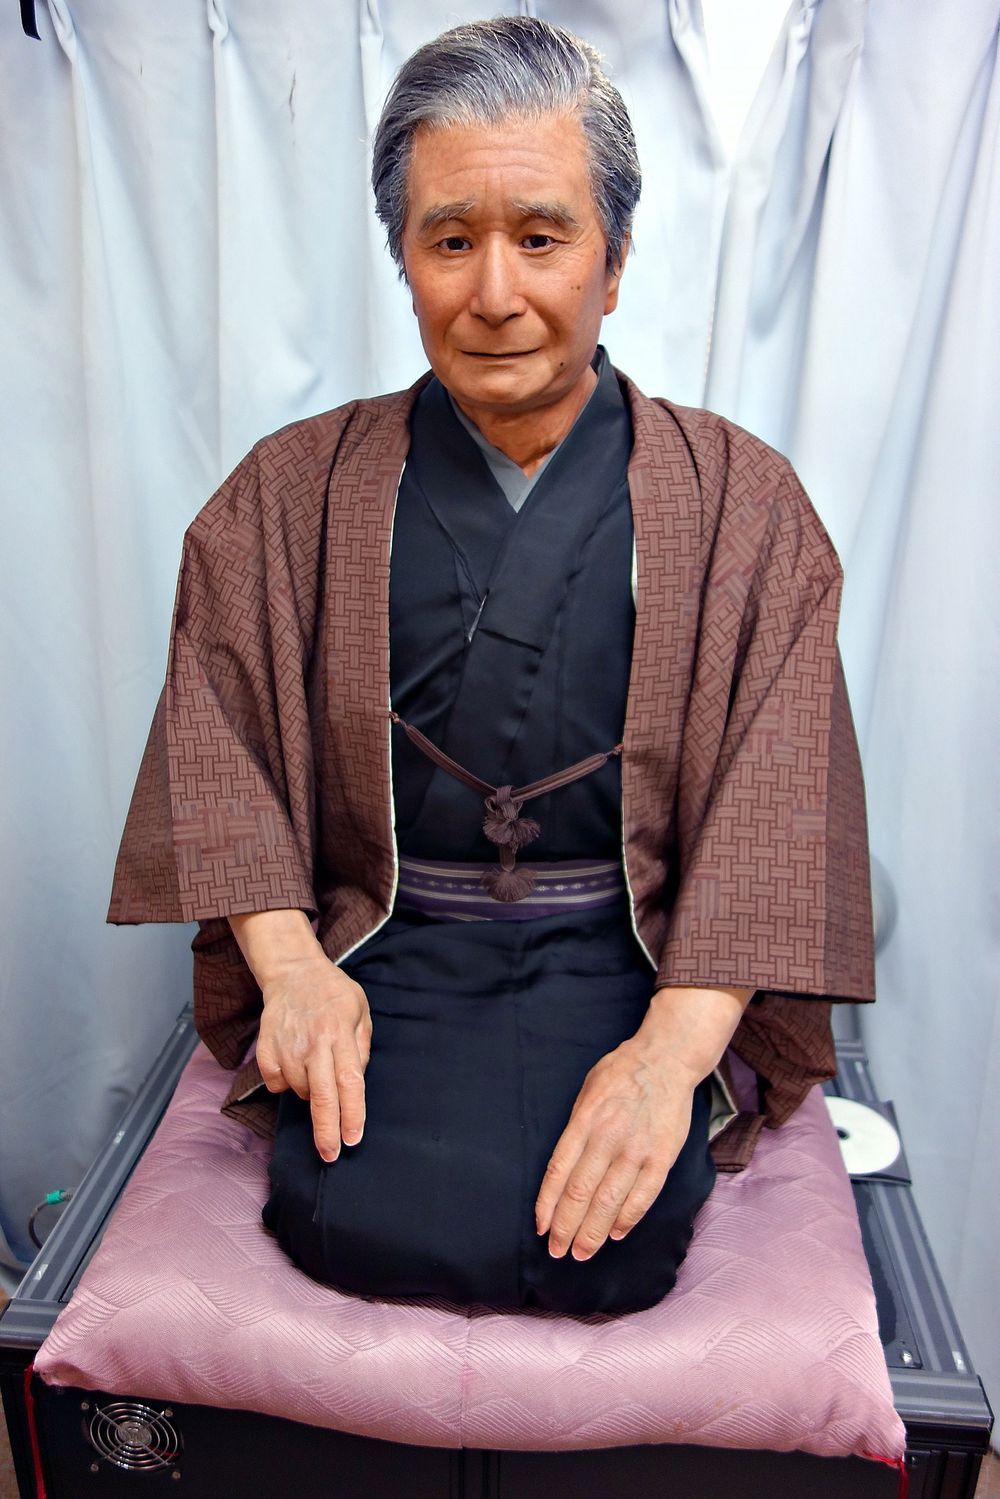 Nasjonalhelgen: Den berømte historiefortelleren Katsura Beicho er i dag 86 år. Gjennom robotkopien får han mulighet til å underholde det japanske publikummet i mange år fremover.  Beicho android developed by Breeze Arts Co., Ltd. Foto: Michael Stenberg  